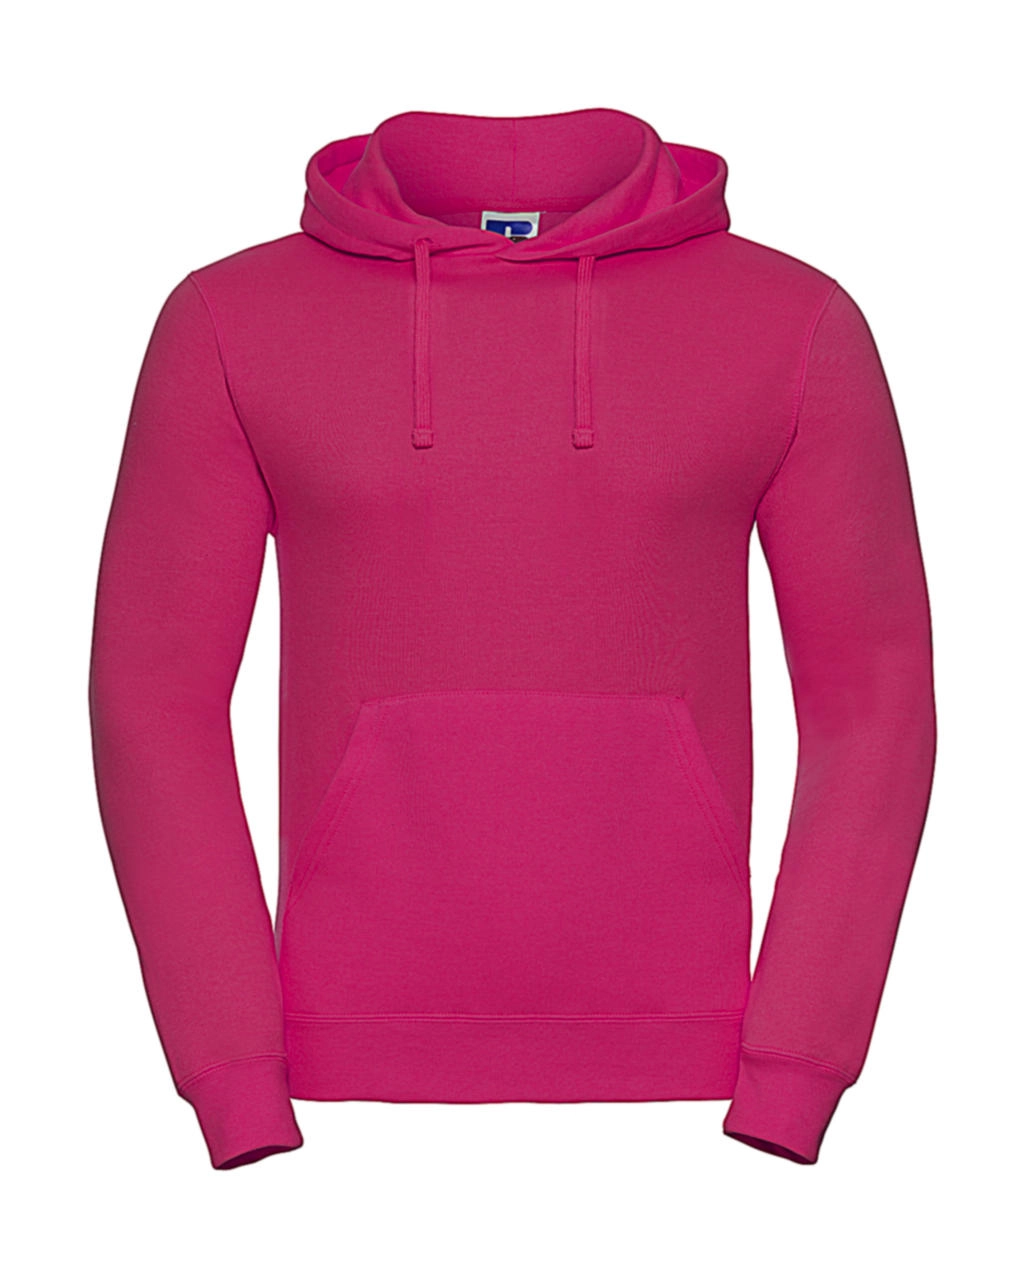 Hooded Sweatshirt zum Besticken und Bedrucken in der Farbe Fuchsia mit Ihren Logo, Schriftzug oder Motiv.